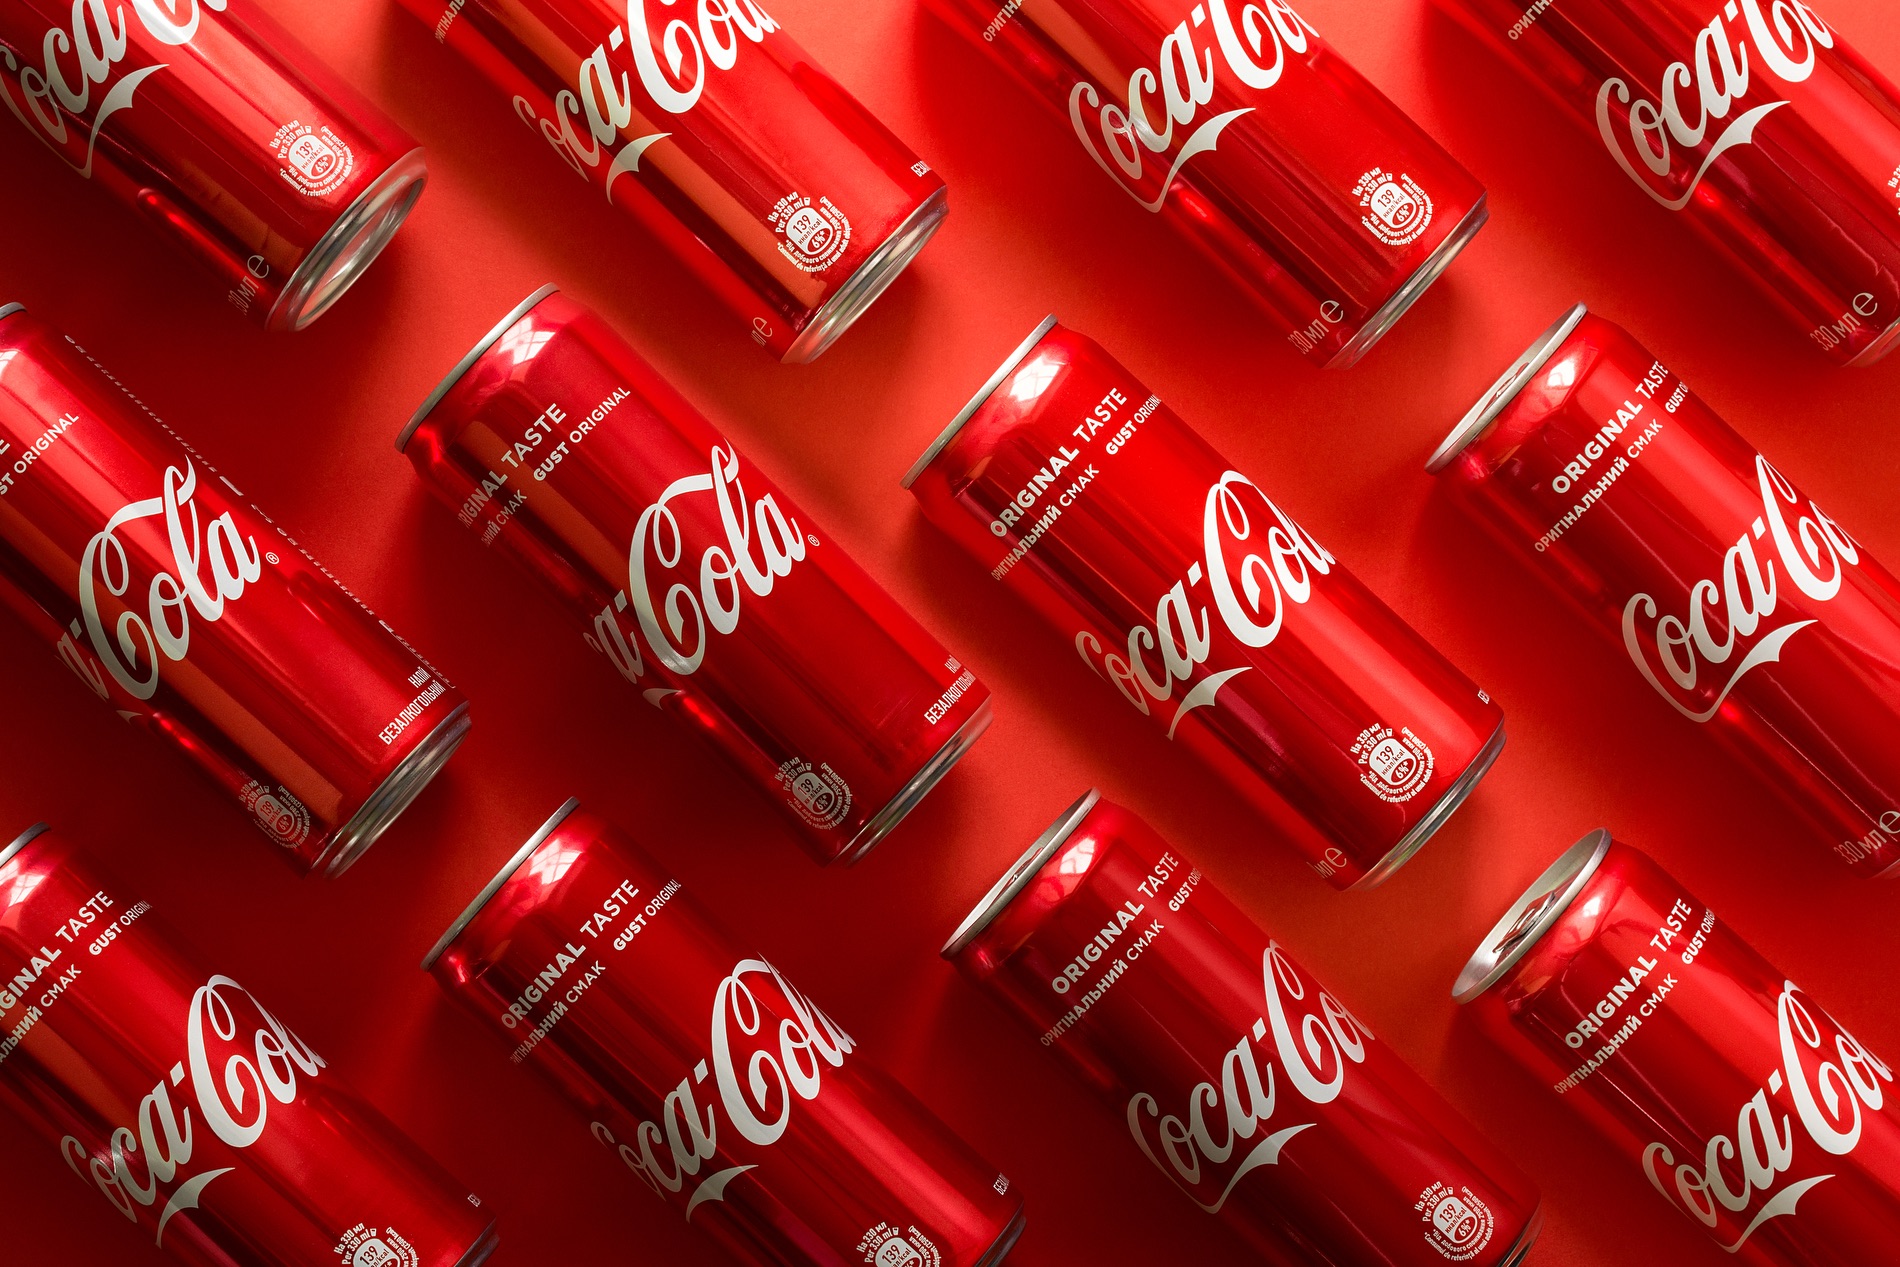 Coca-Cola branding